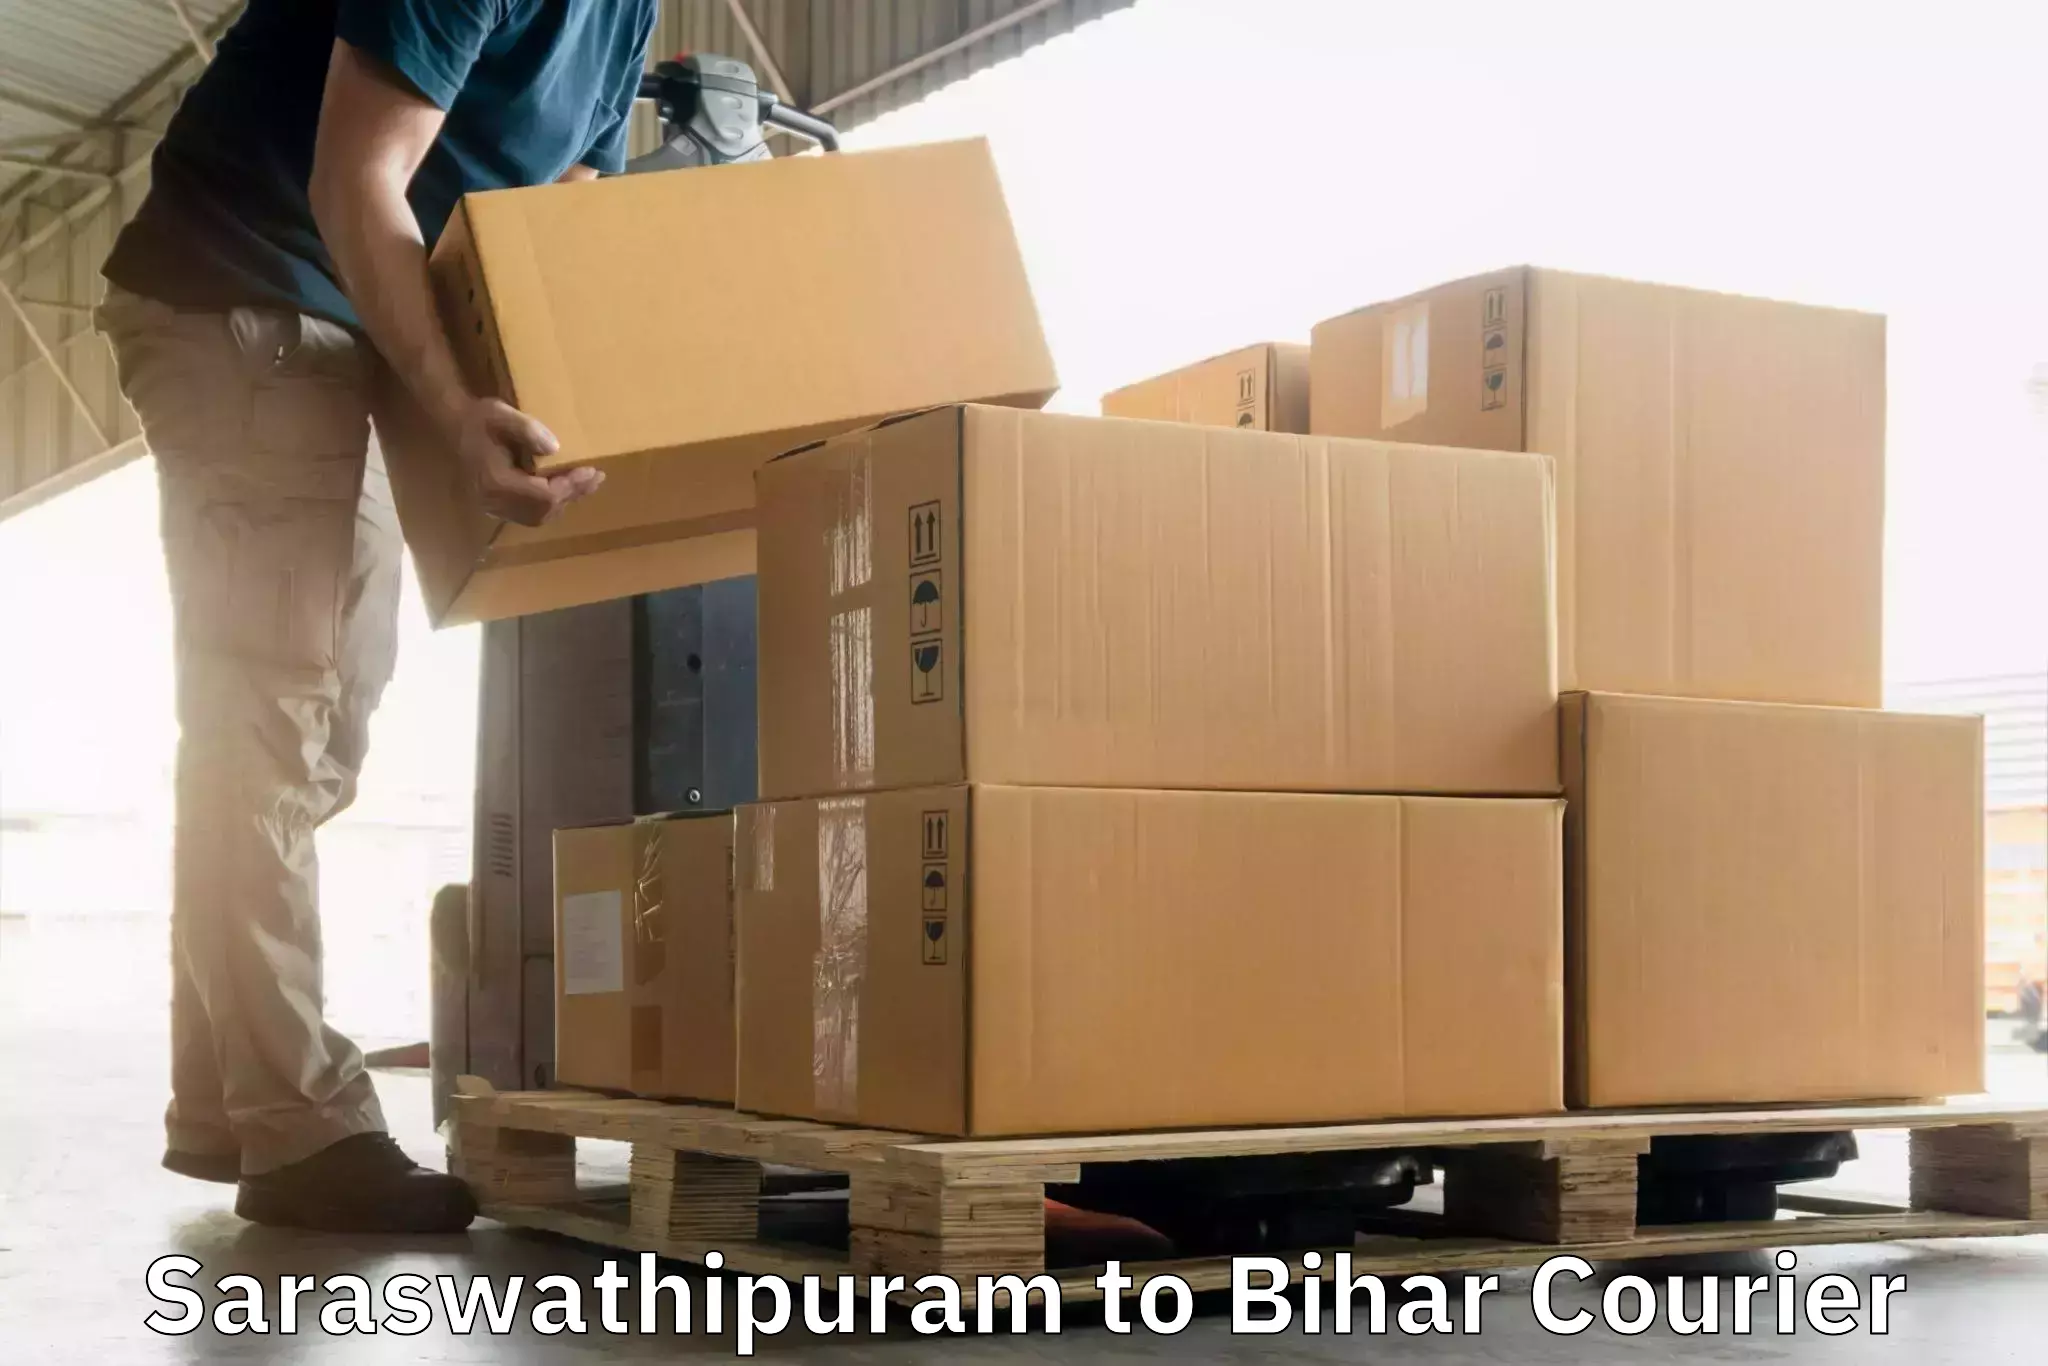 Express package transport in Saraswathipuram to Bihar